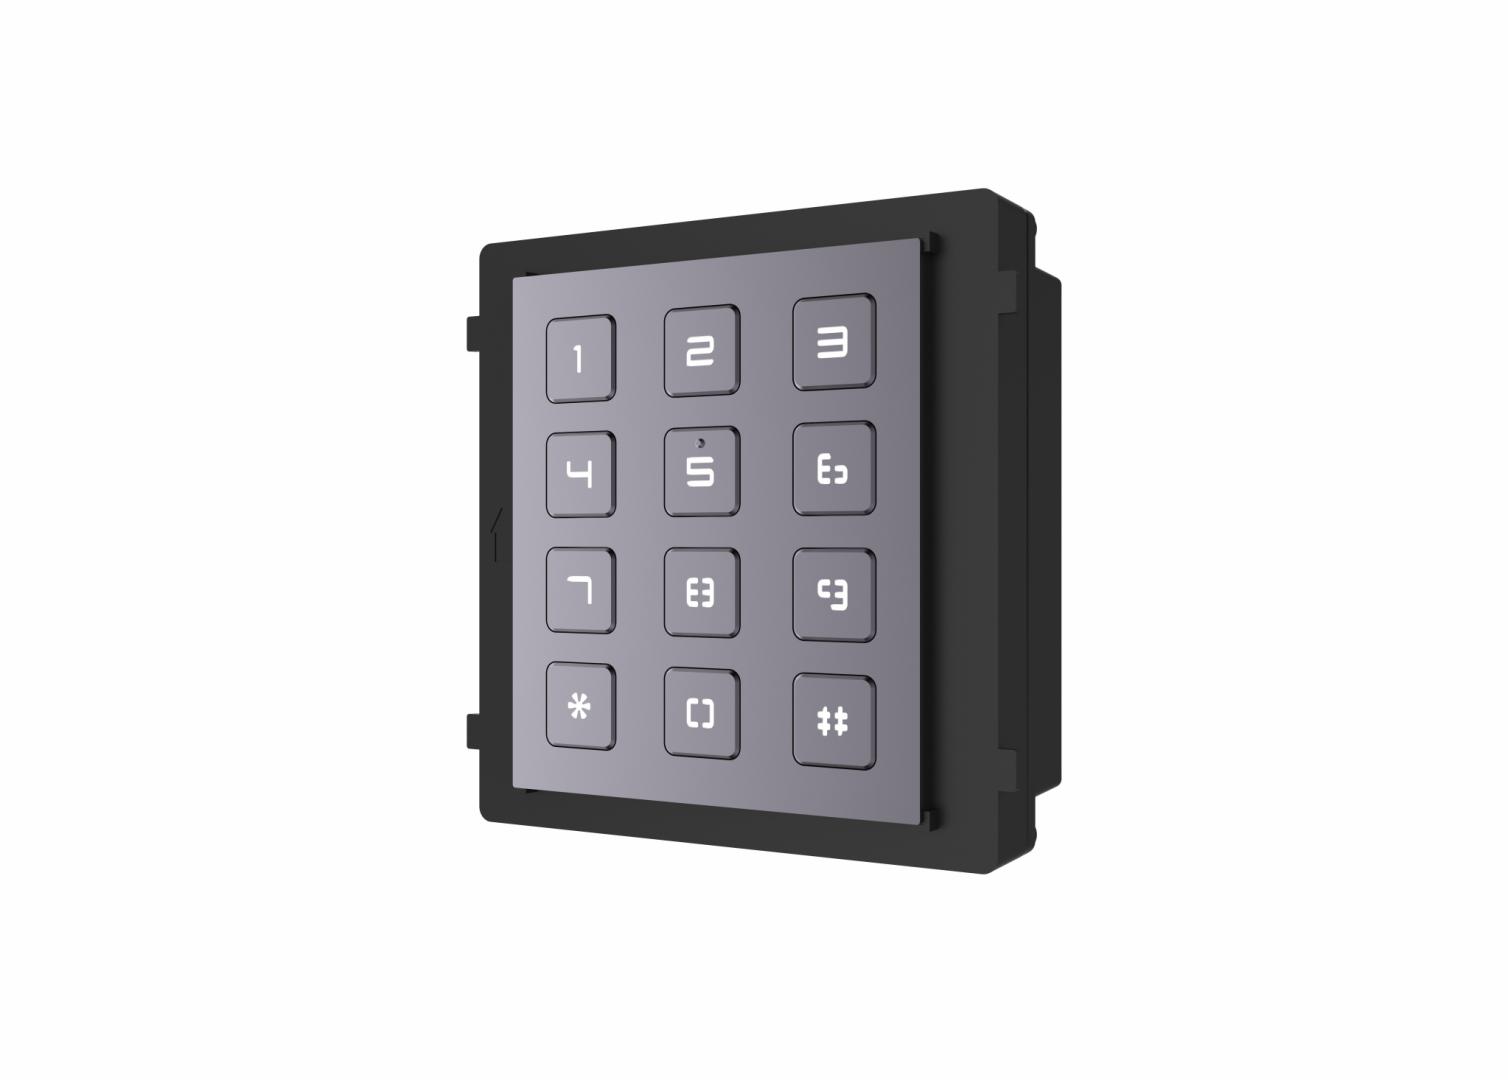 Modul de extensie videointerfon cu tastatura Hikvision DS-KD-KP; permite formarea codului de apartament sau a codului de acces; montajaplicat sau ingropat (accesoriile de montaj nu sunt incluse); iluminarepe timp de noapte; Protectie: IP65, IK7; Dimensiuni: 98.5 mm × 100 mm ×34.2 mm; Temperatura de